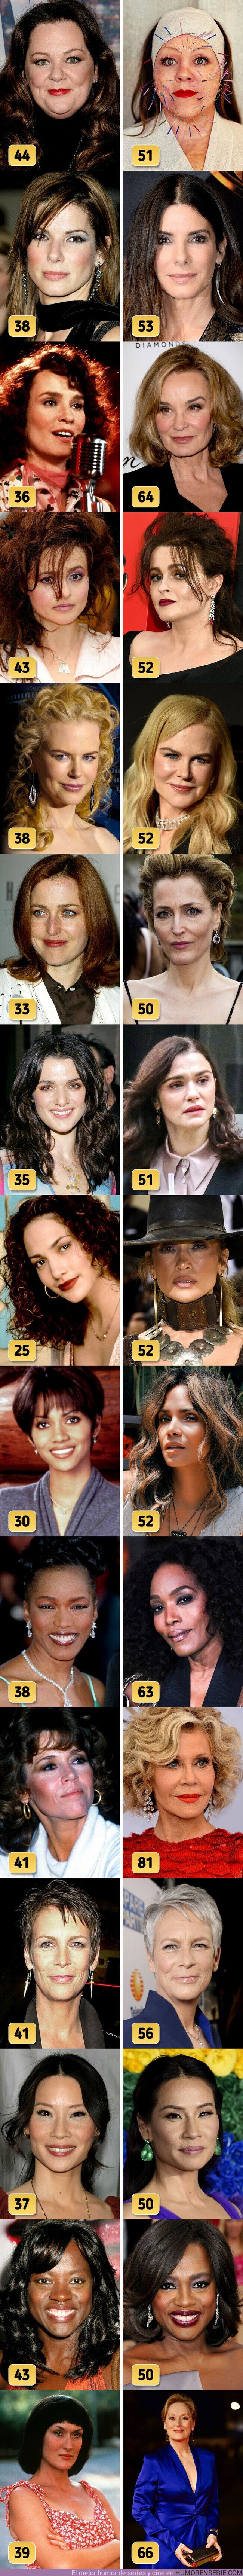 87232 - GALERÍA: 15 Mujeres famosas que se volvieron aún más guapas después de los 50 años